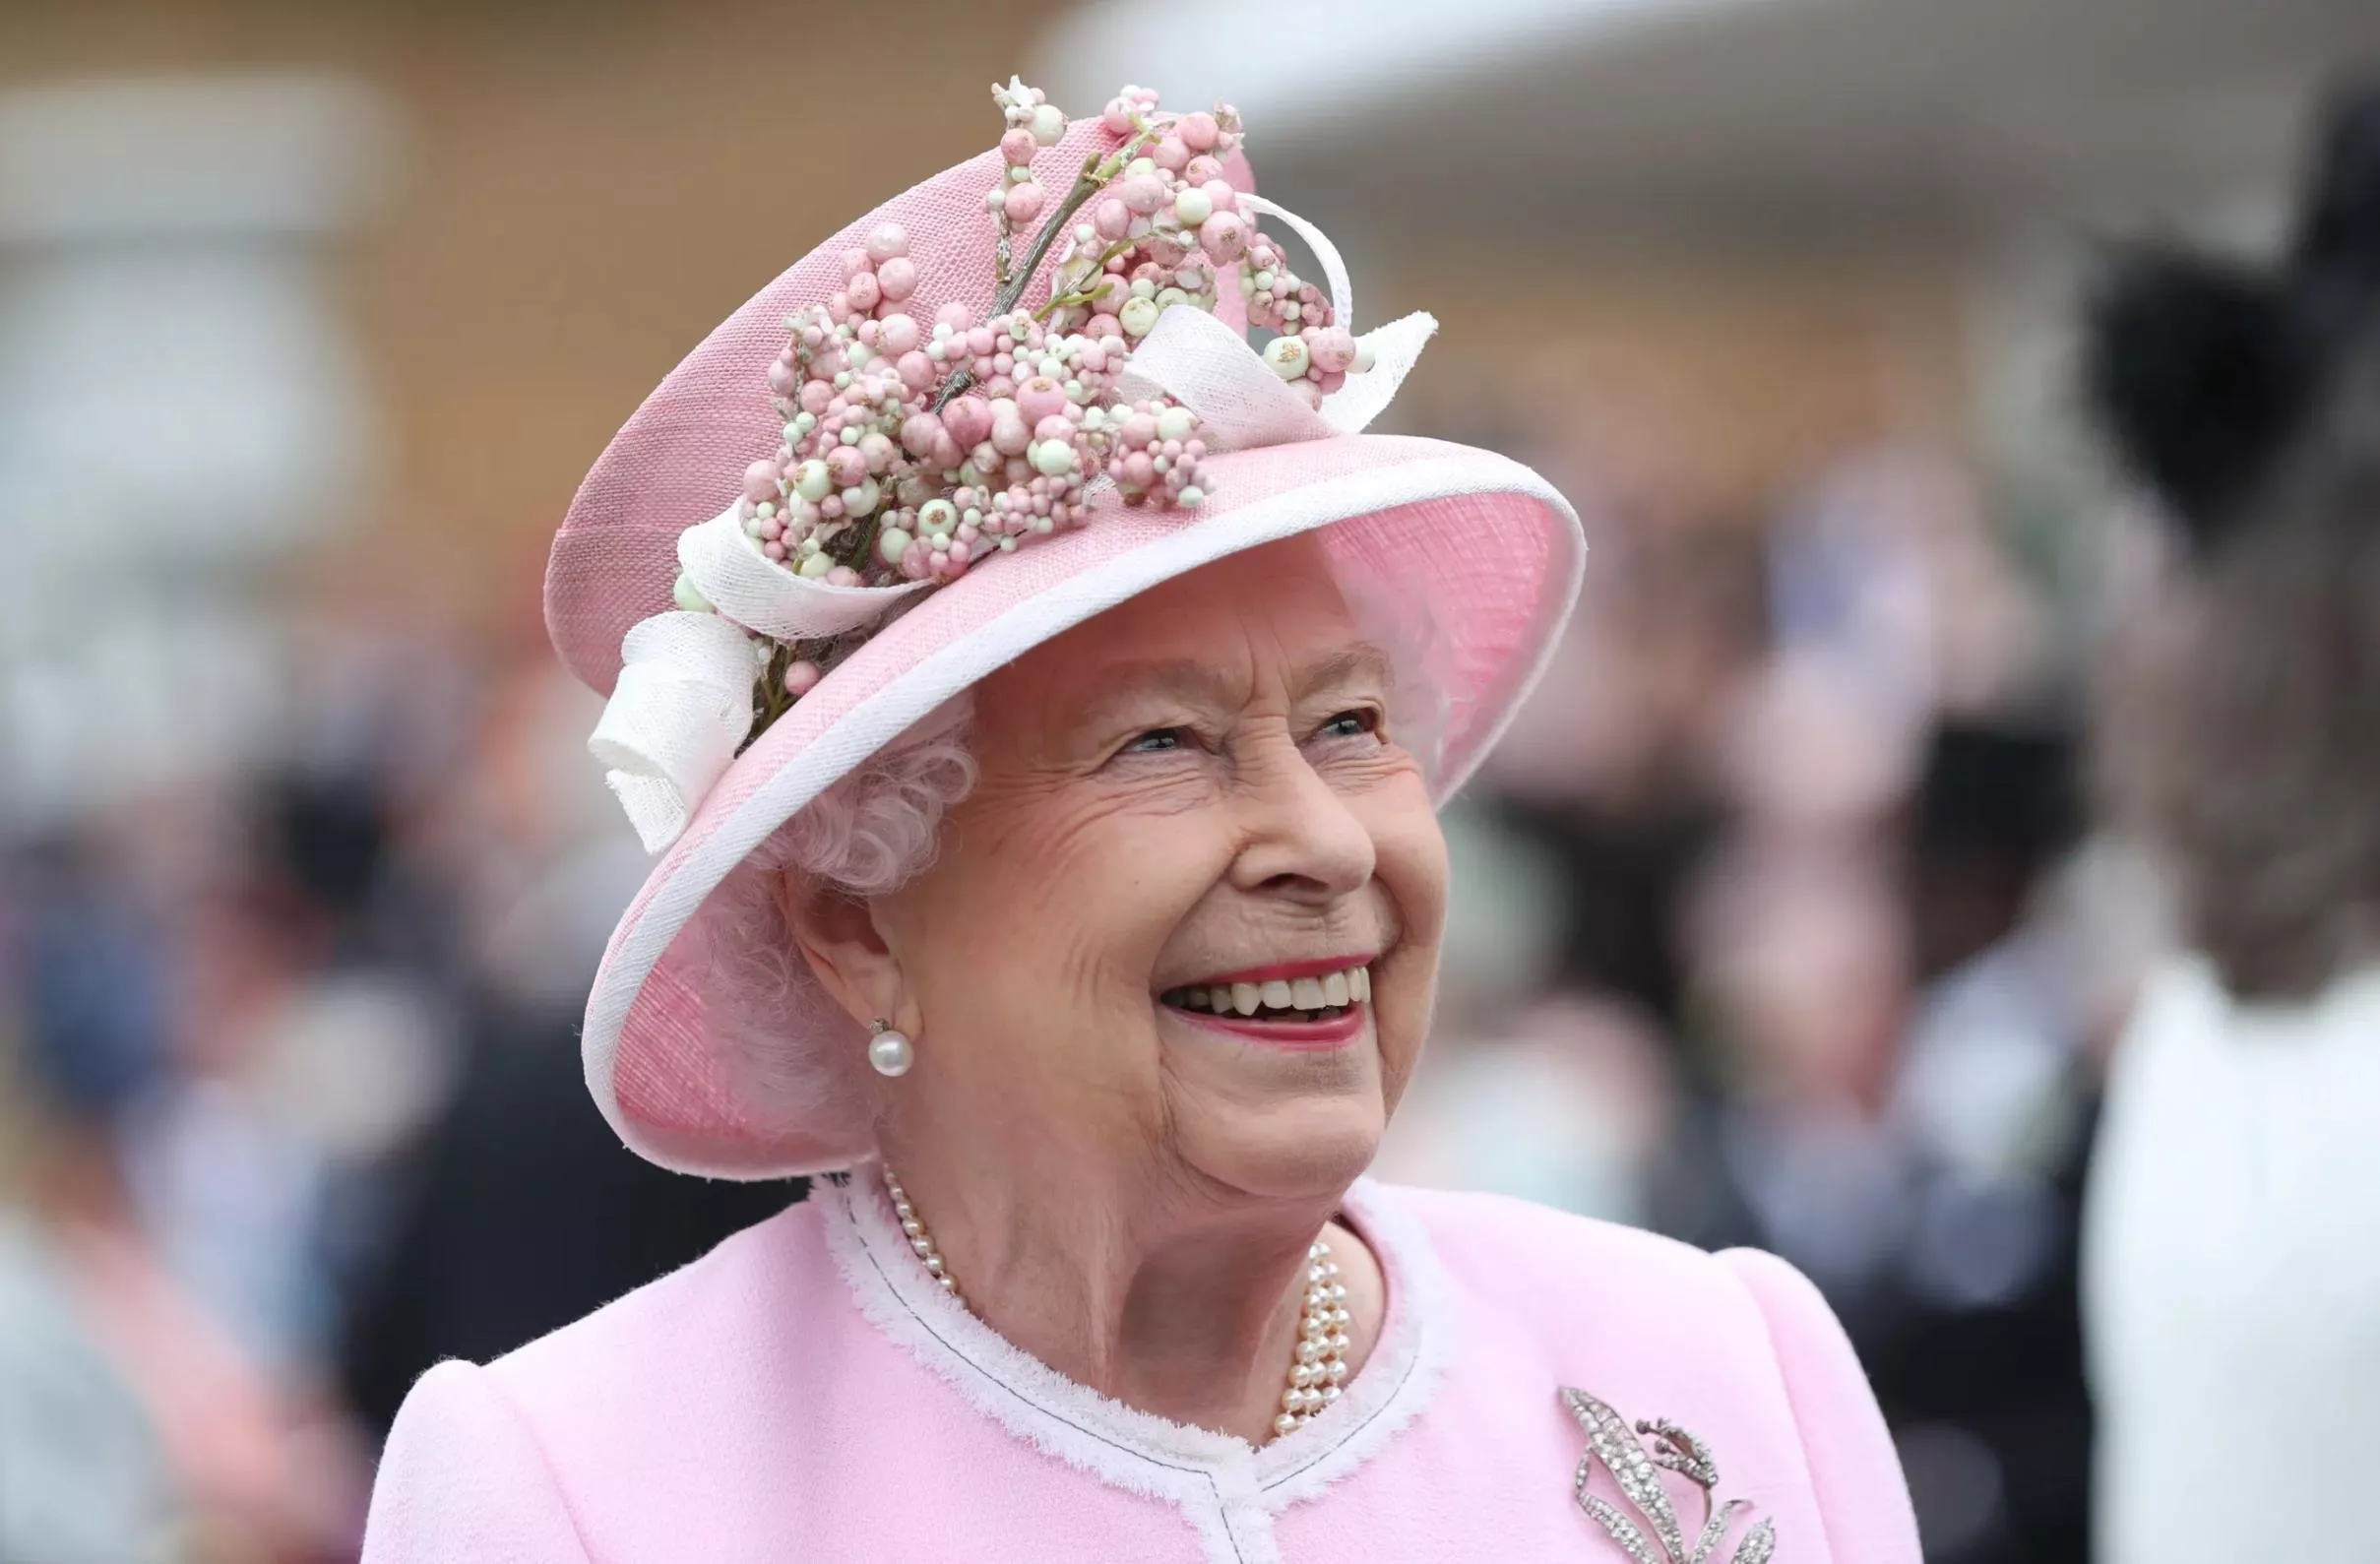 Elizabeth: The Unseen Queen: فيلم وثائقي يعرض مقاطع نادرة للملكة اليزابيث الثانية